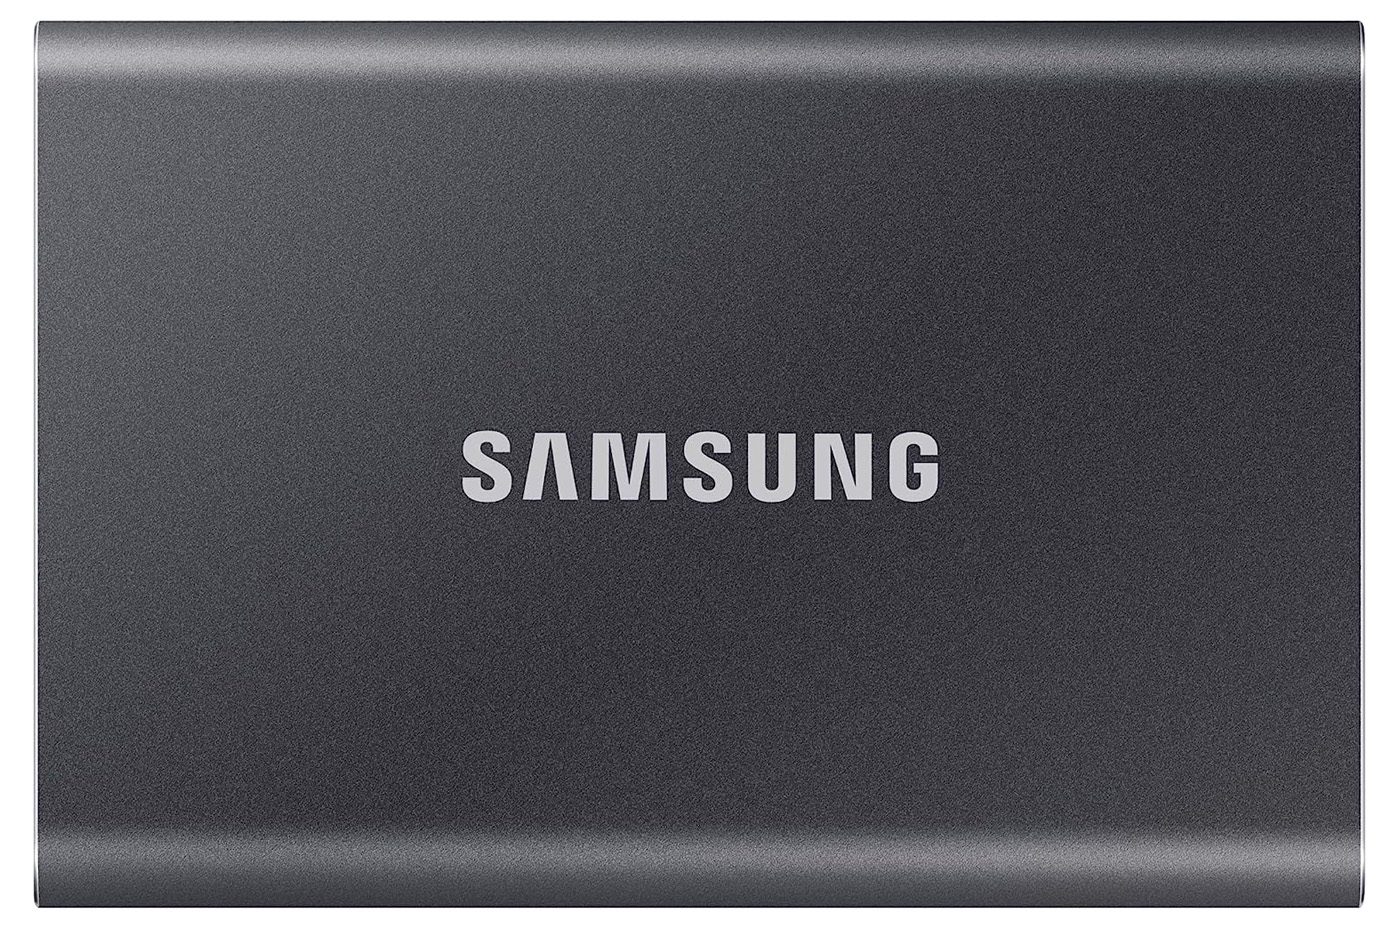 Vente flash  : la réduction folle sur ce disque dur externe Samsung  crée l'événement